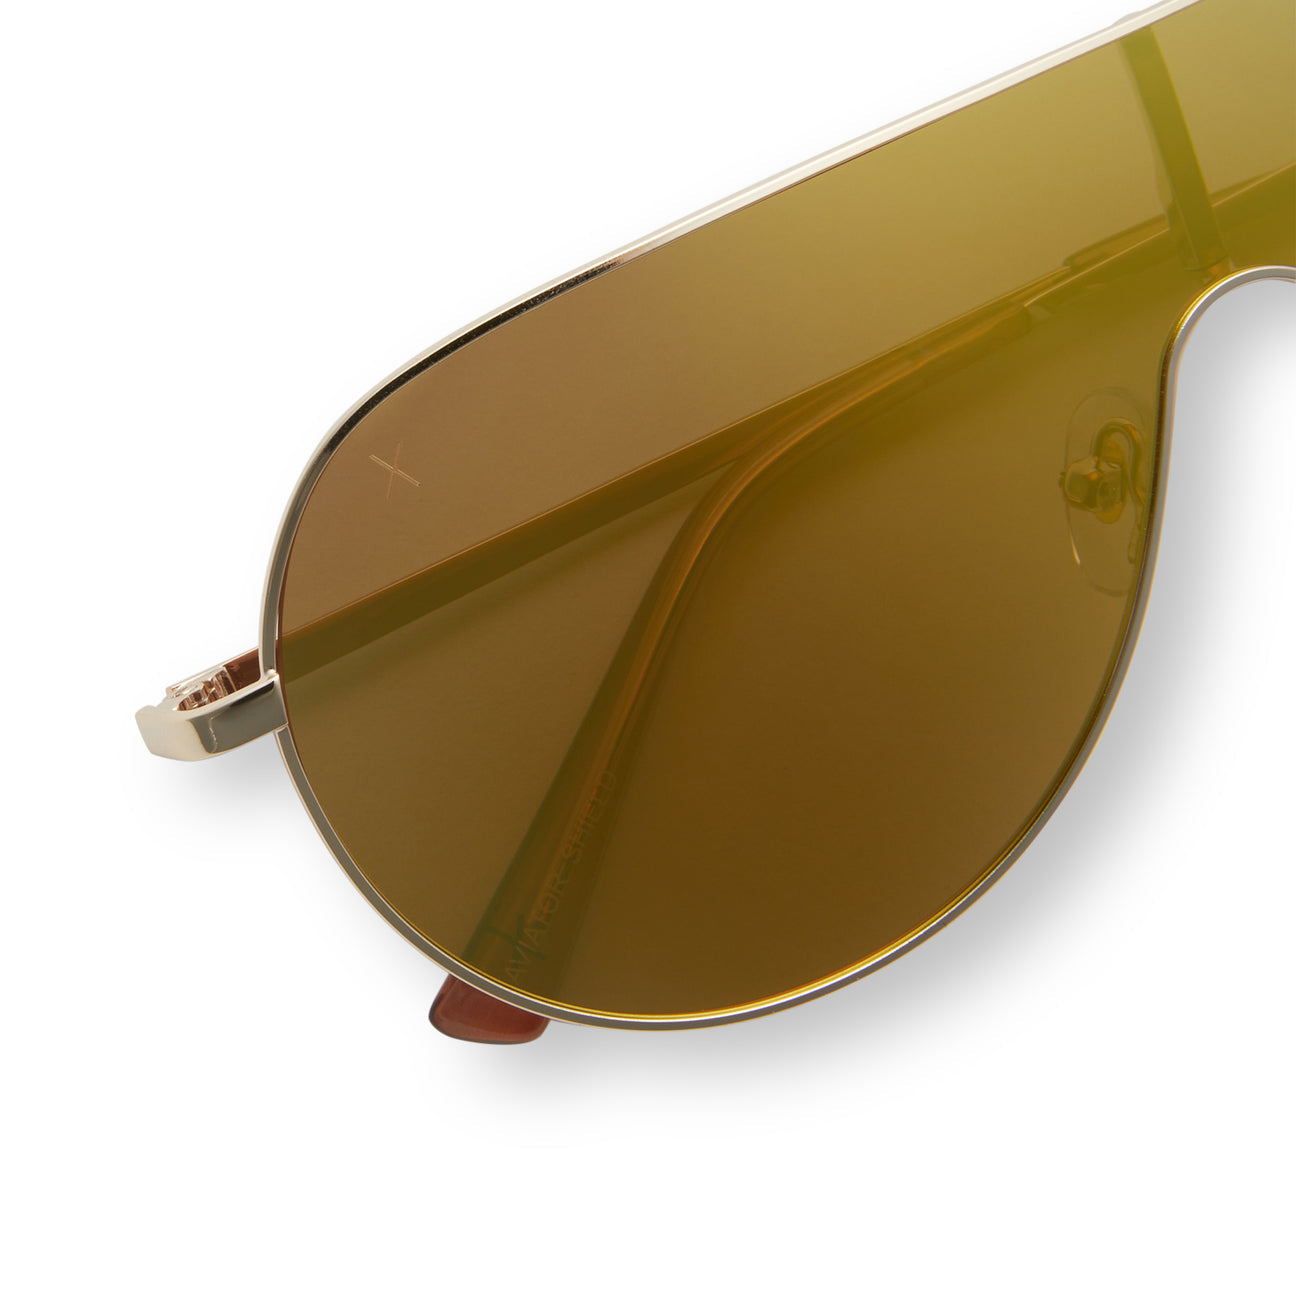 Tarzana Gold+ Gold Mirror Polarized Sunglasses